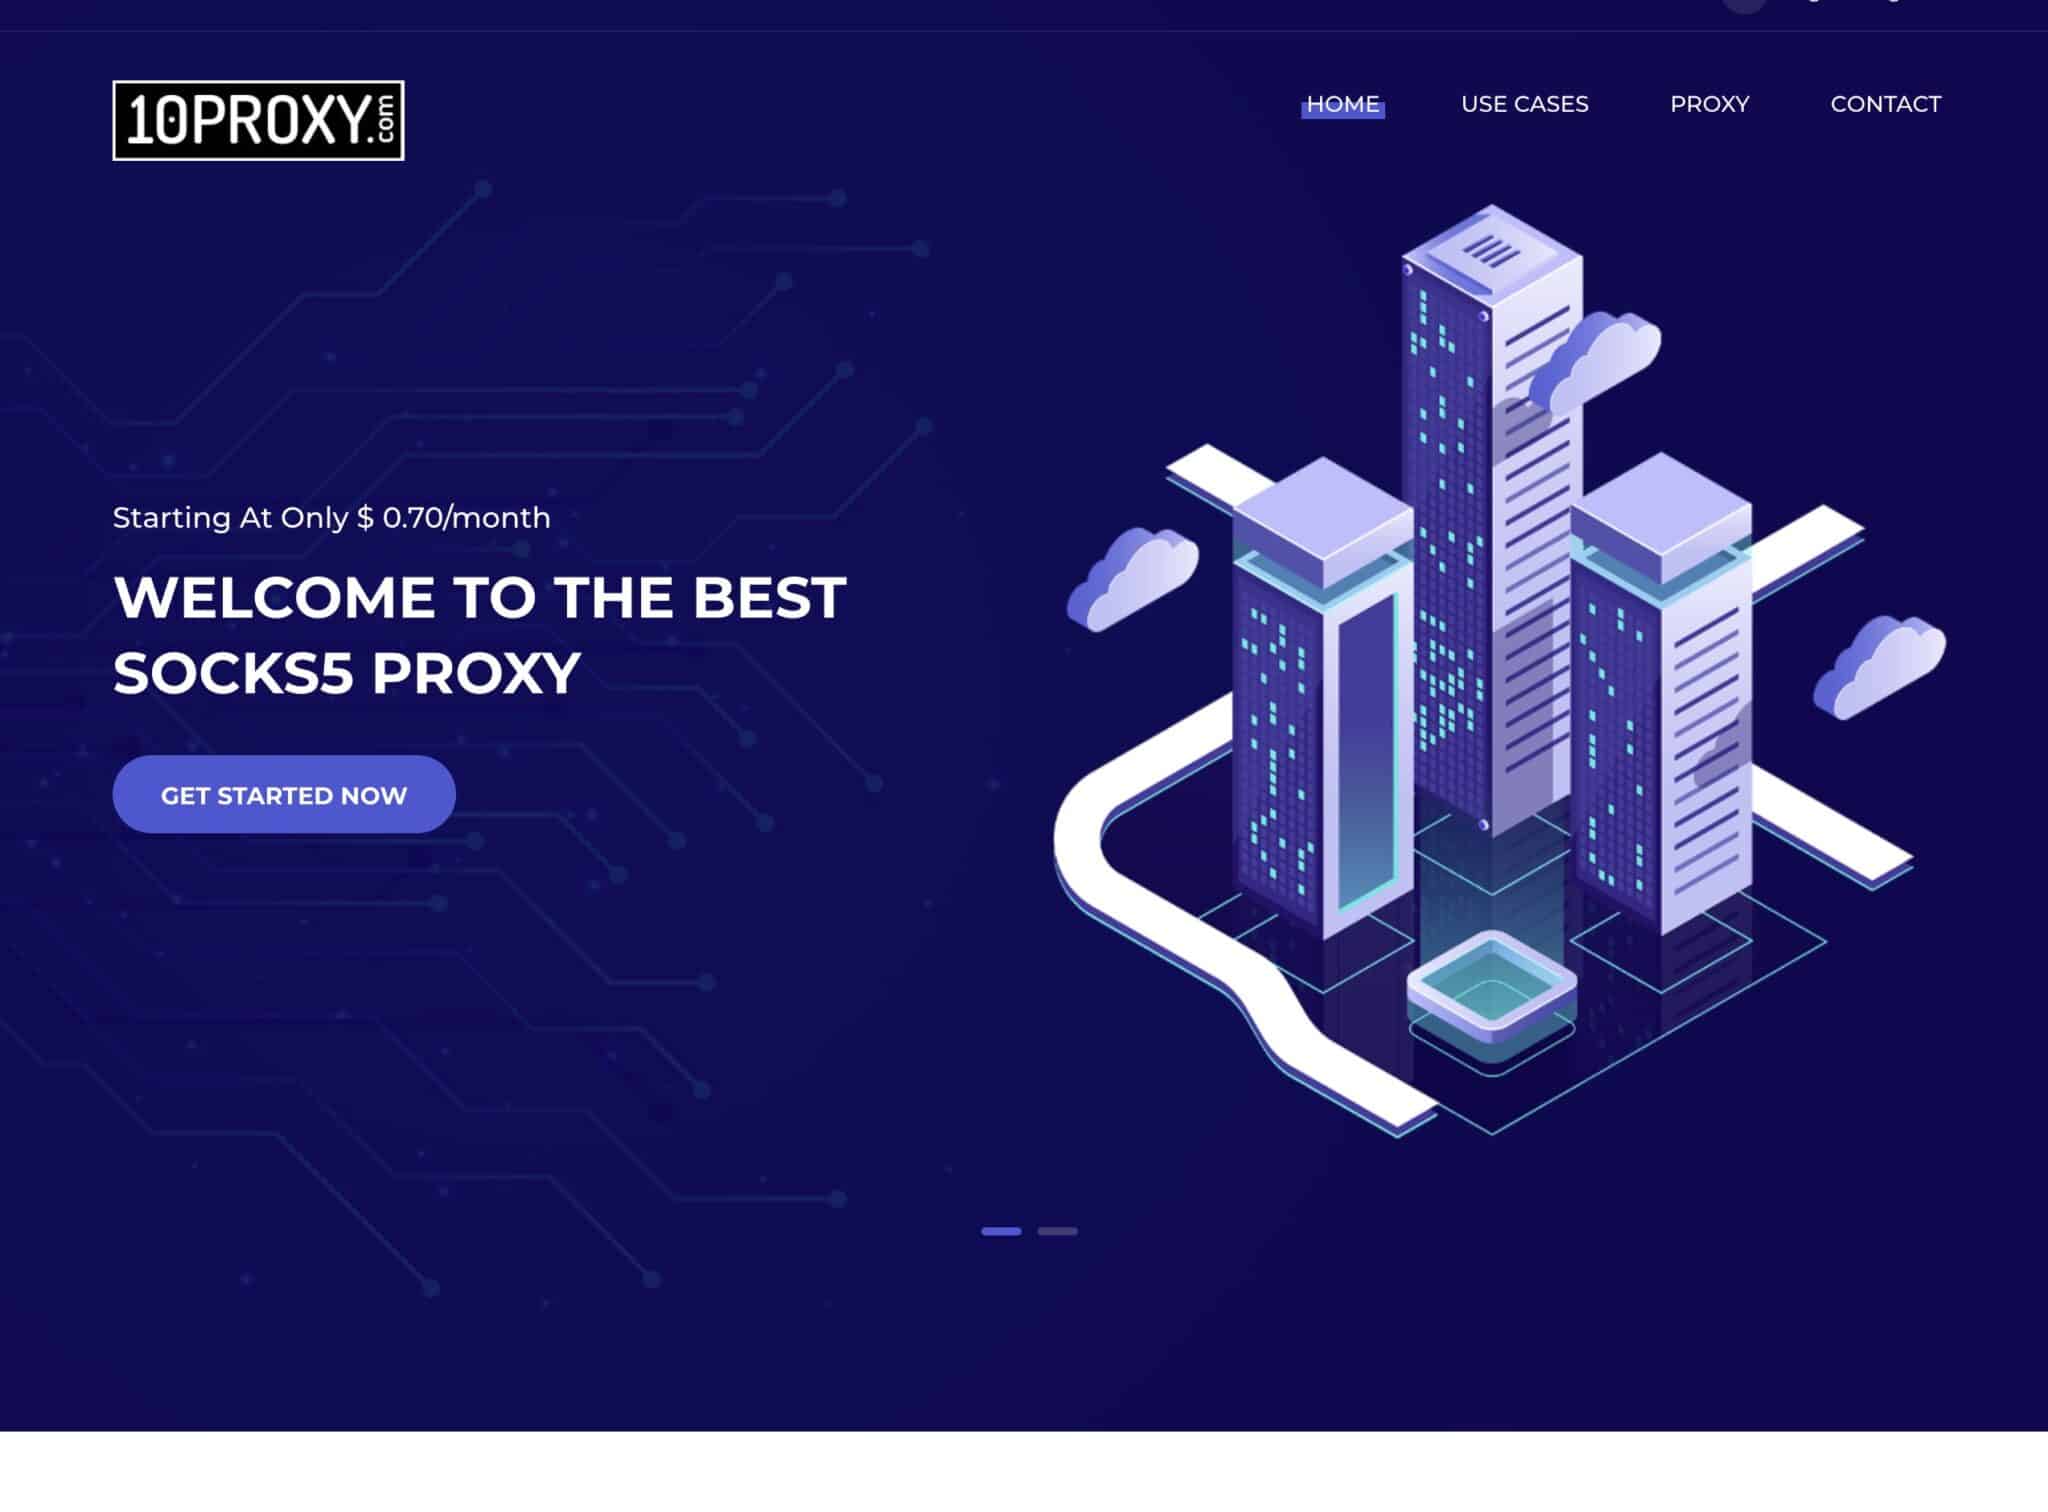 FineProxy vs 10proxy.com: Výběr nejlepší proxy služby